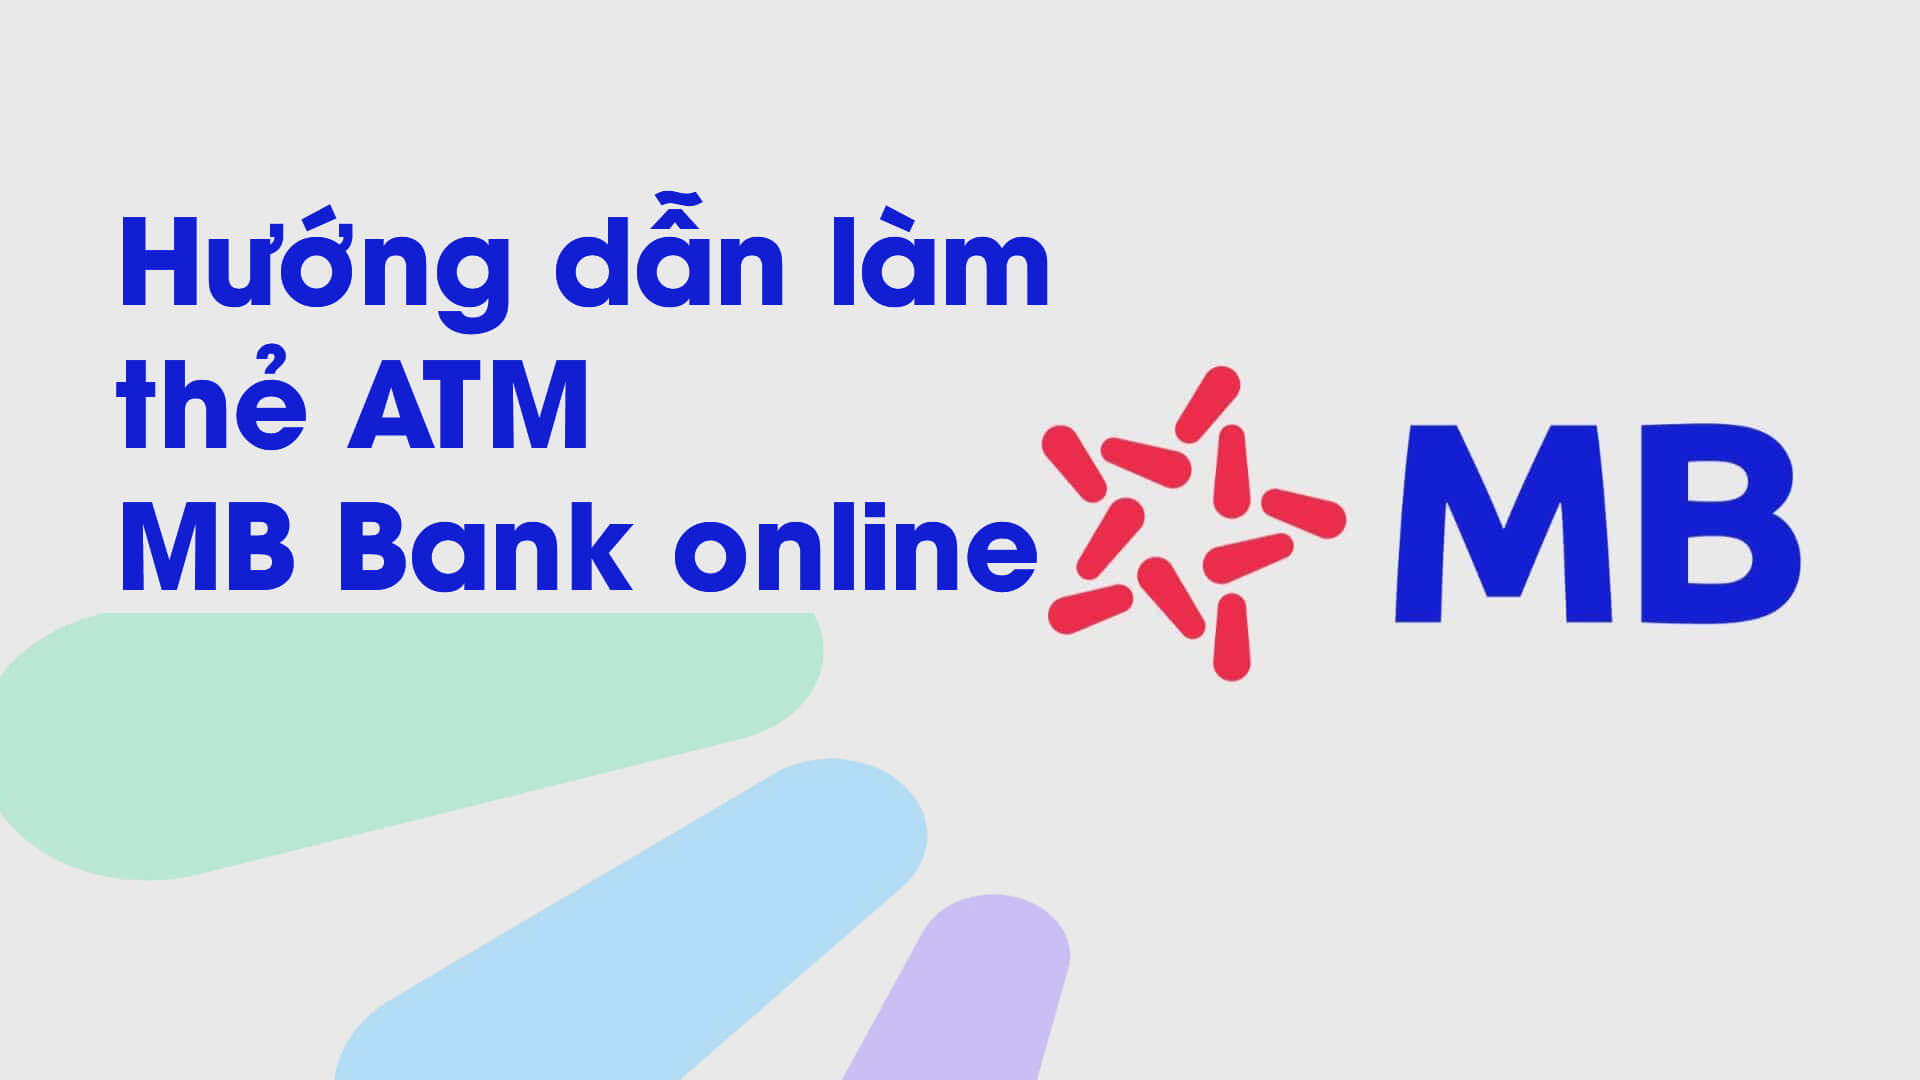 Hướng dẫn làm thẻ ngân hàng MB bank online chi tiết nhất 